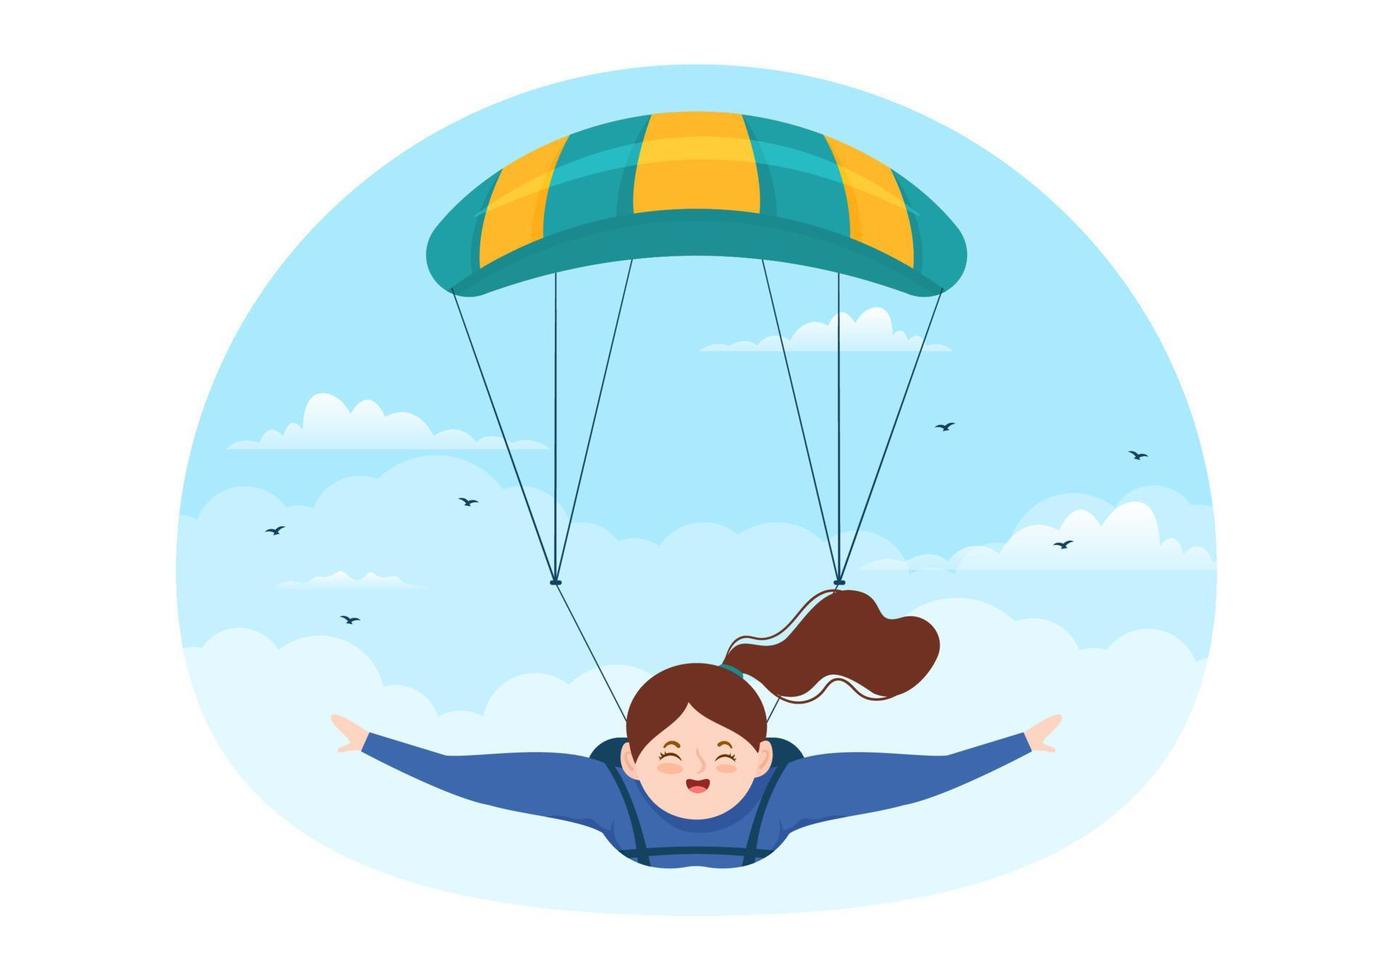 ilustración de paracaidismo con paracaidistas que usan paracaídas y salto del cielo para actividades al aire libre en plantillas dibujadas a mano de dibujos animados de deportes extremos planos vector